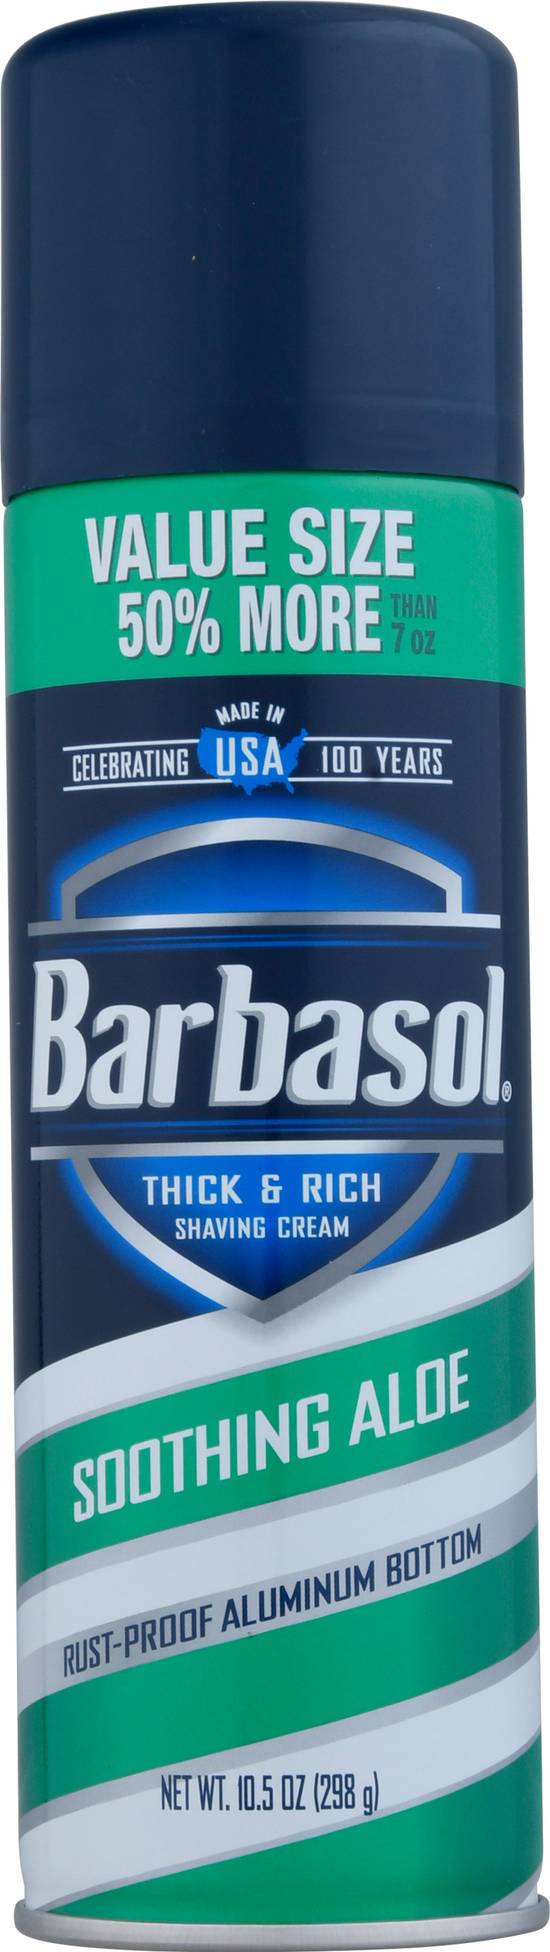 Barbasol Thick & Rich Soothing Aloe Shaving Cream (10.5 oz)